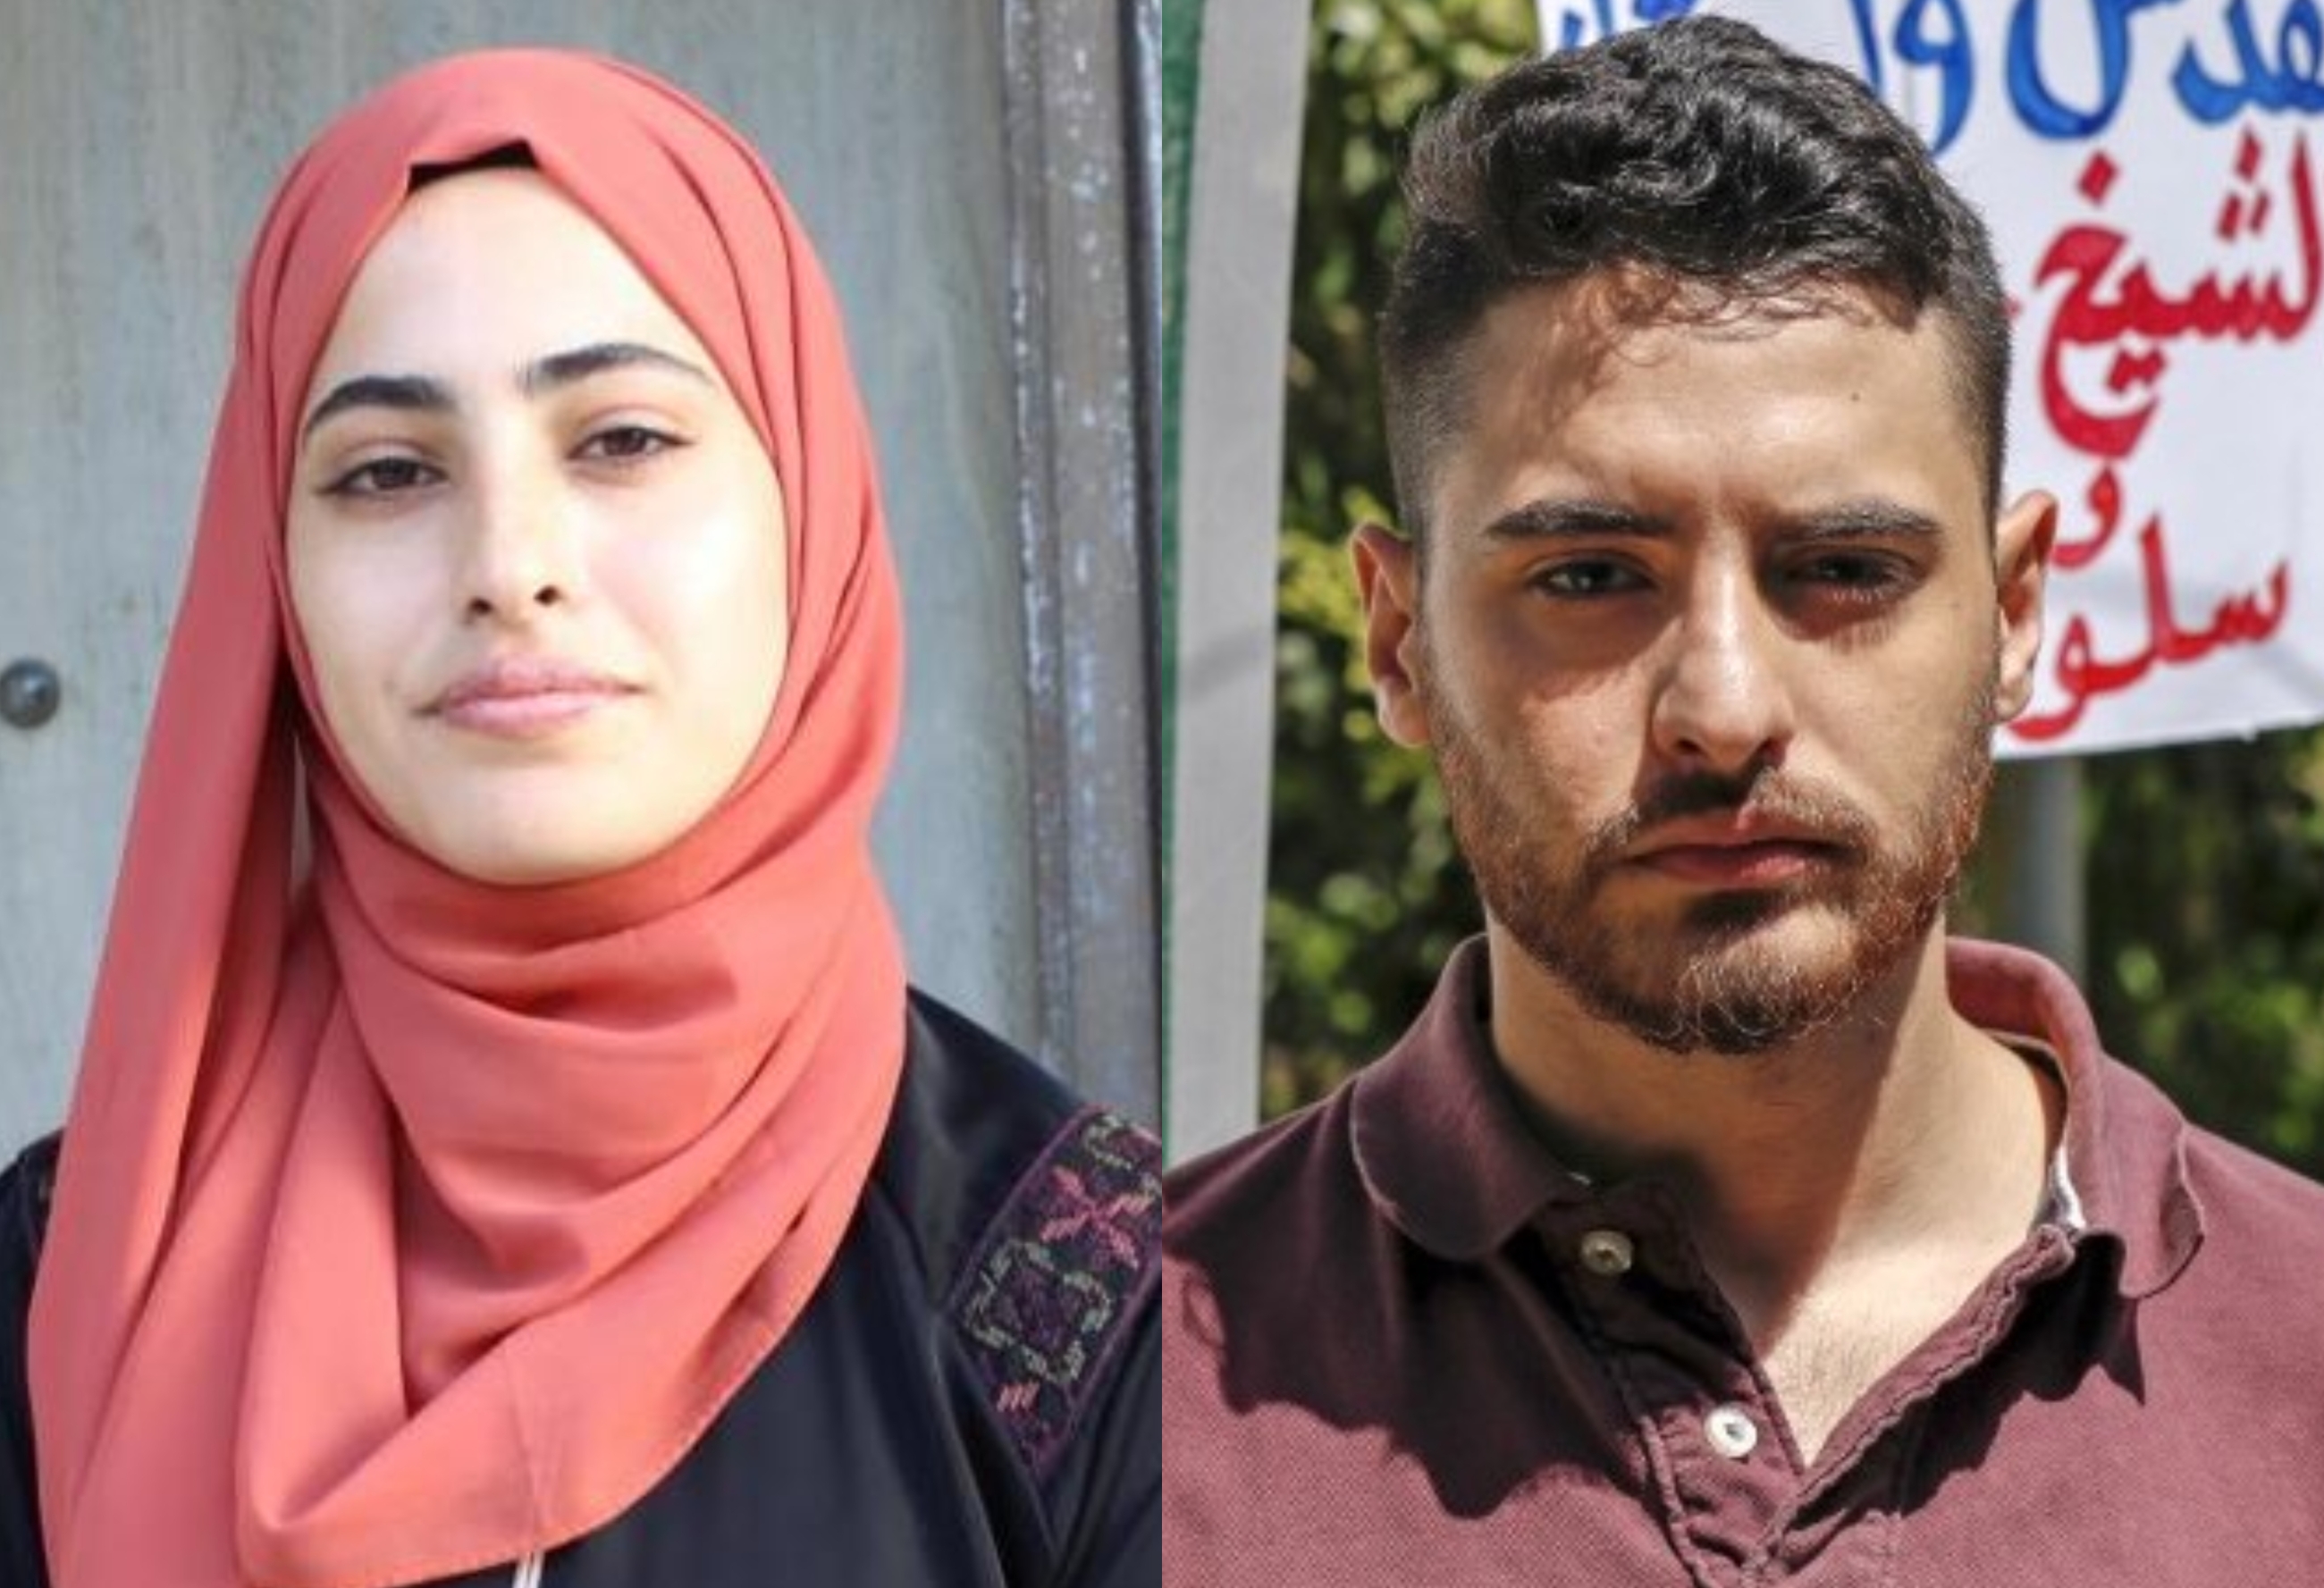 Muna et son frère Mohammed al-Kurd ont promis de s’opposer à l’ordonnance imminente d’un tribunal israélien les obligeant à quitter leur domicile à Jérusalem (MEE & AFP)